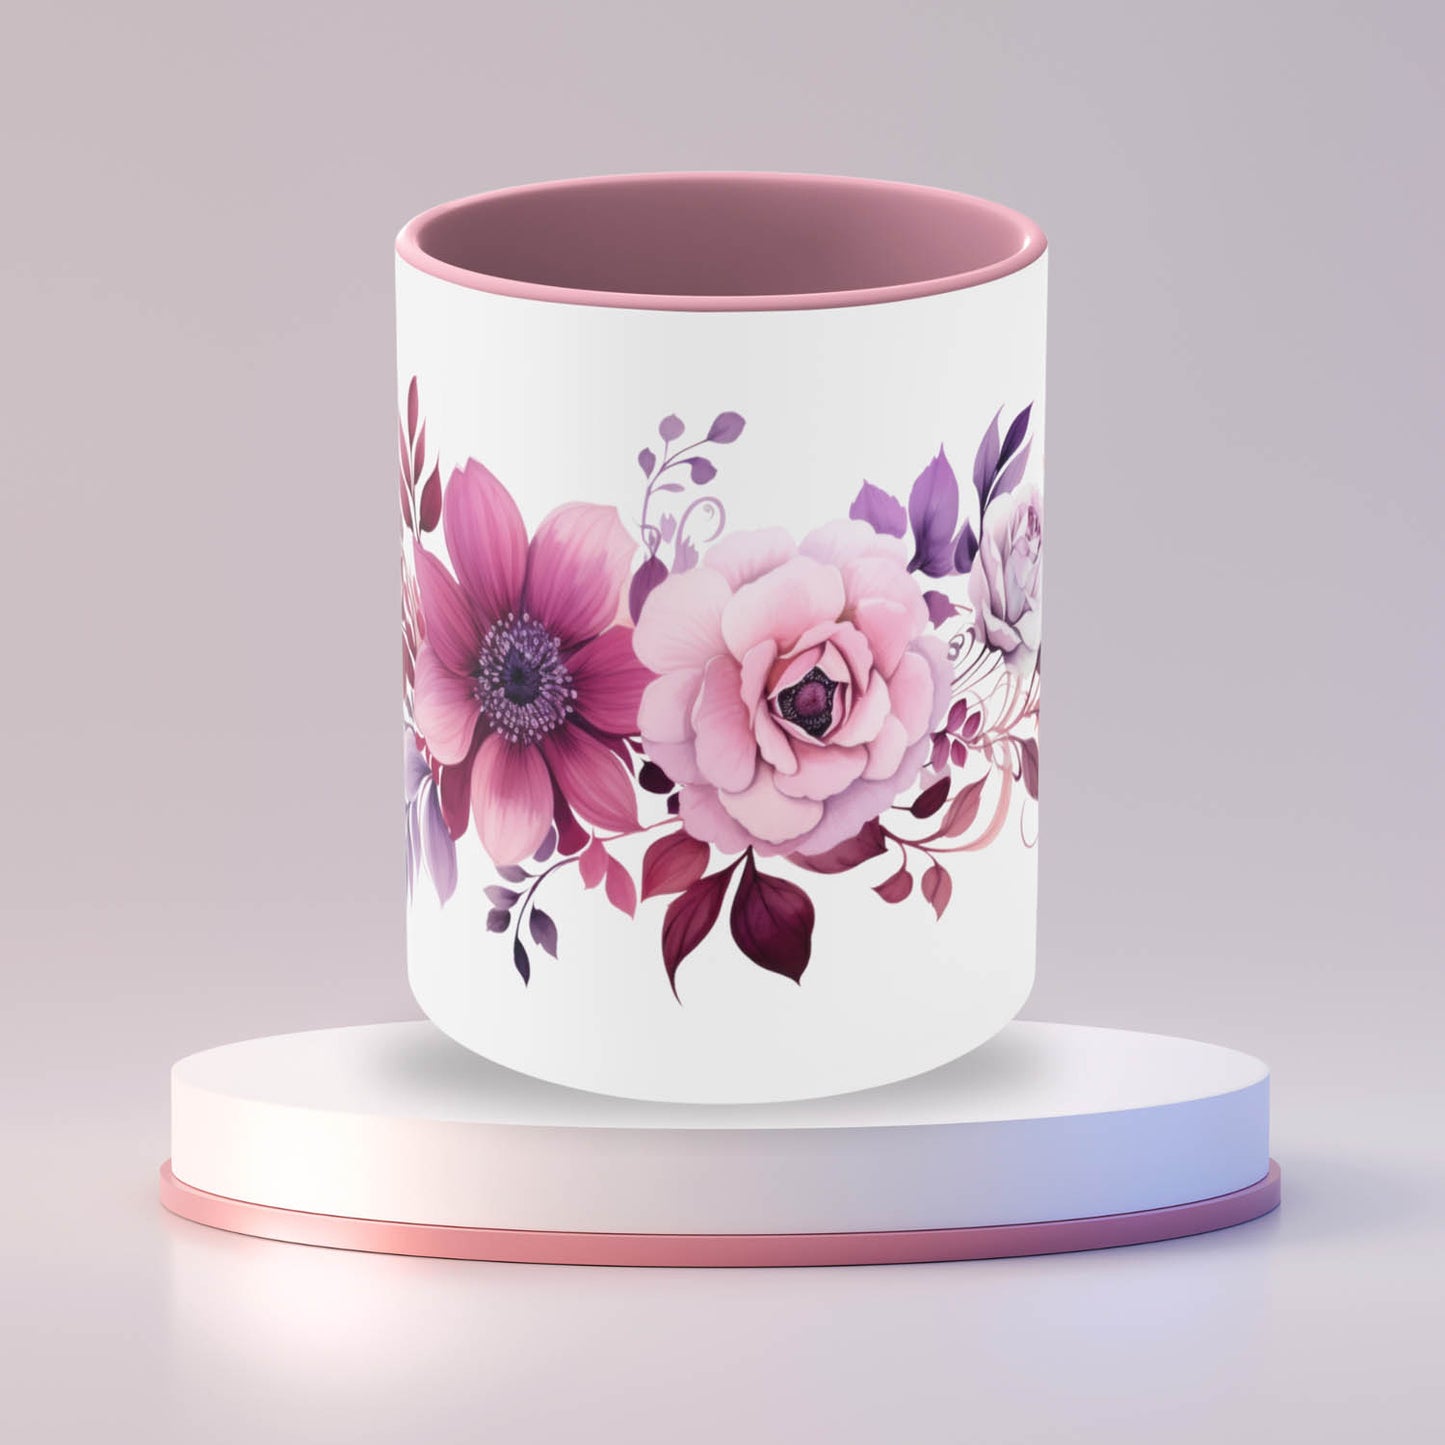 Elegant Floral Mug